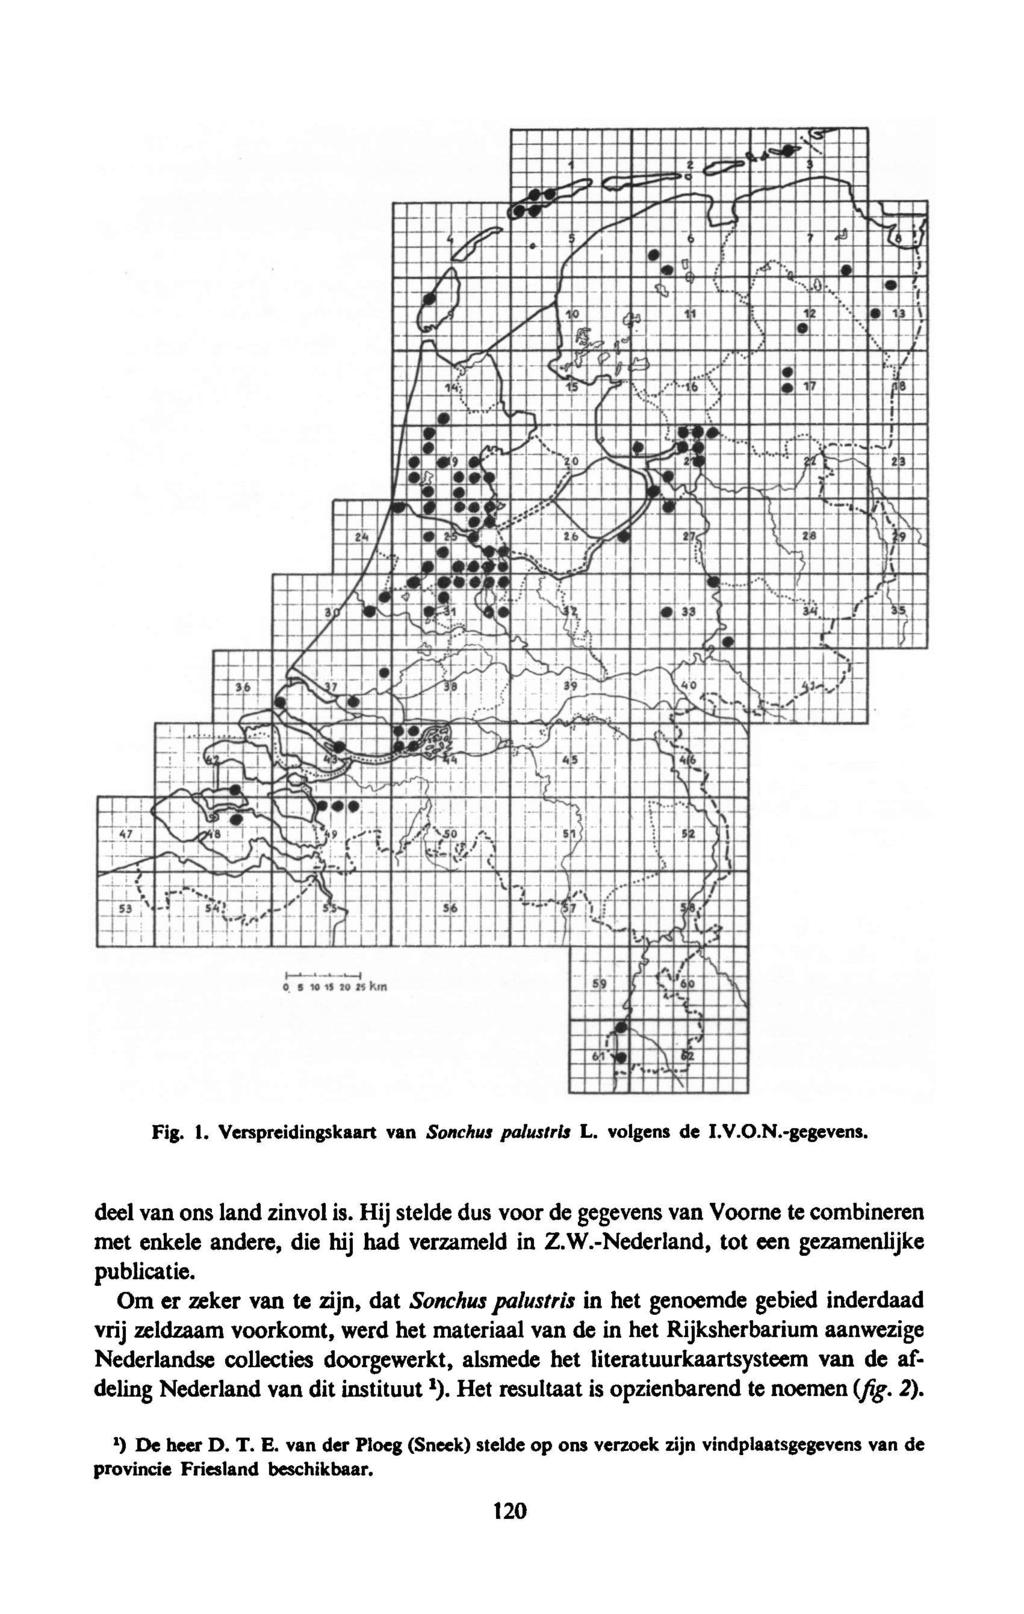 Fig. 1. Verspreidingskaart van Sonchus palustris L. volgens de I.V.O.N.-gegevens. deel van ons land zinvol is.